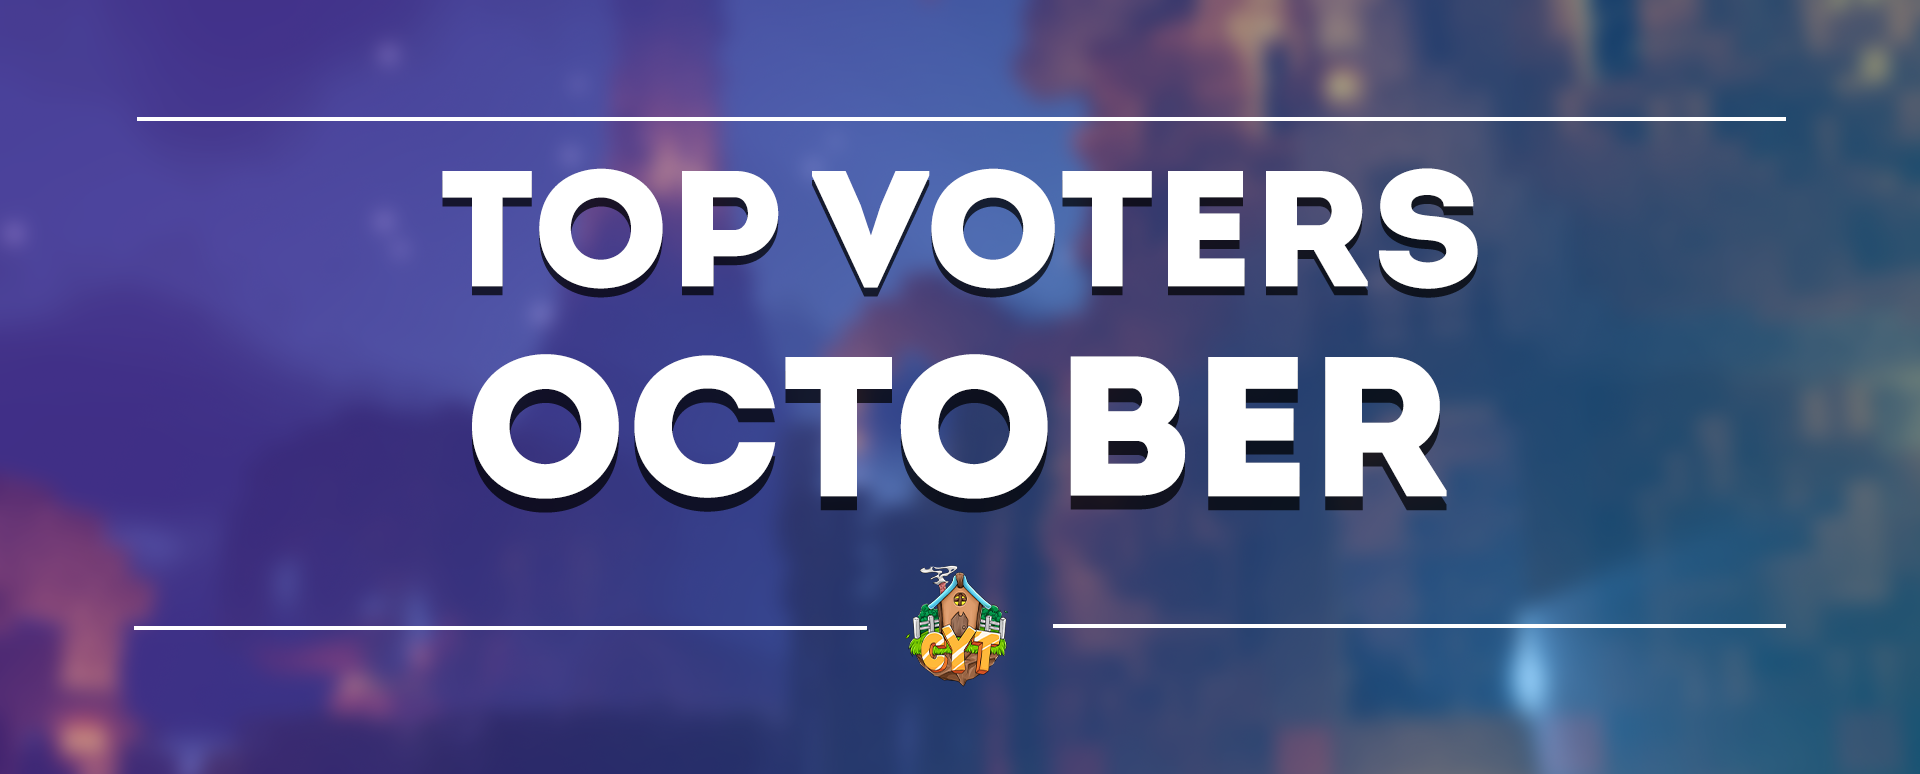 Top Voters - October